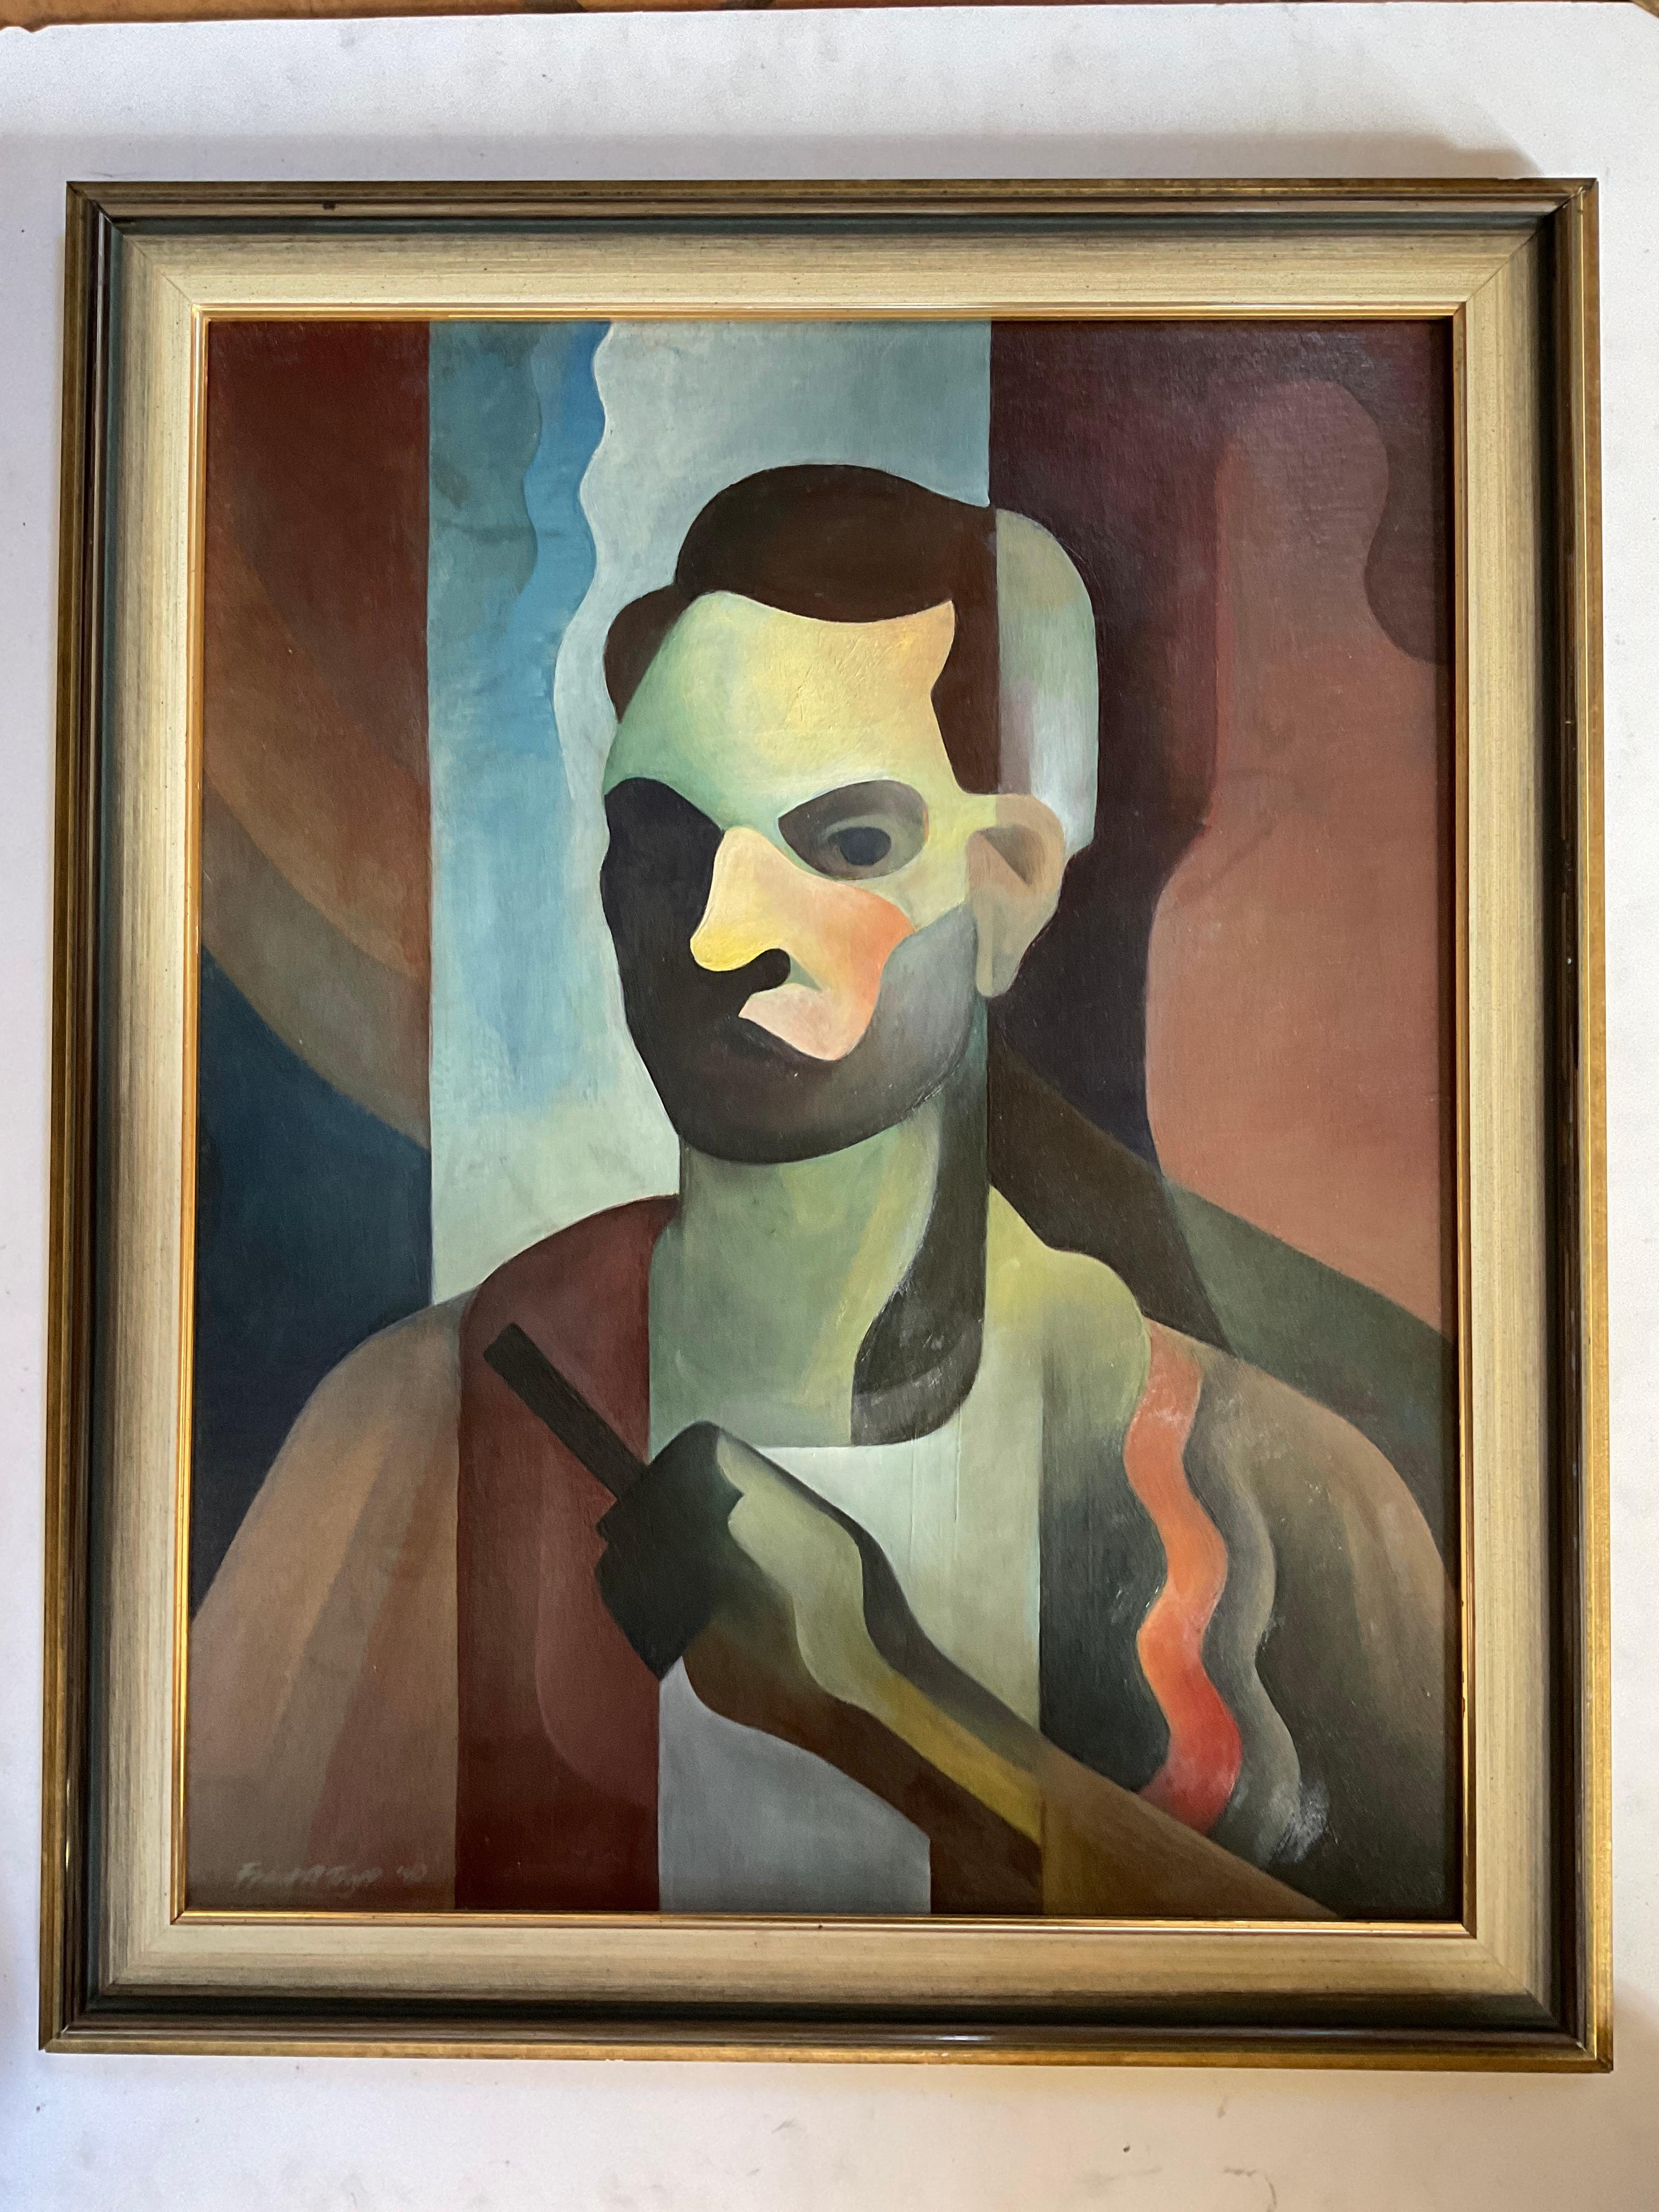 Dies ist ein sehr stilisiertes und kraftvolles Porträt des bekannten Künstlers Frank Anderson Trapp.  Es stammt aus dem Jahr 1940 und ist ganz im modernen Stil der französischen Maler Ferdinand Leger und Le Corbusier gehalten.

Frank A. Trapp wurde